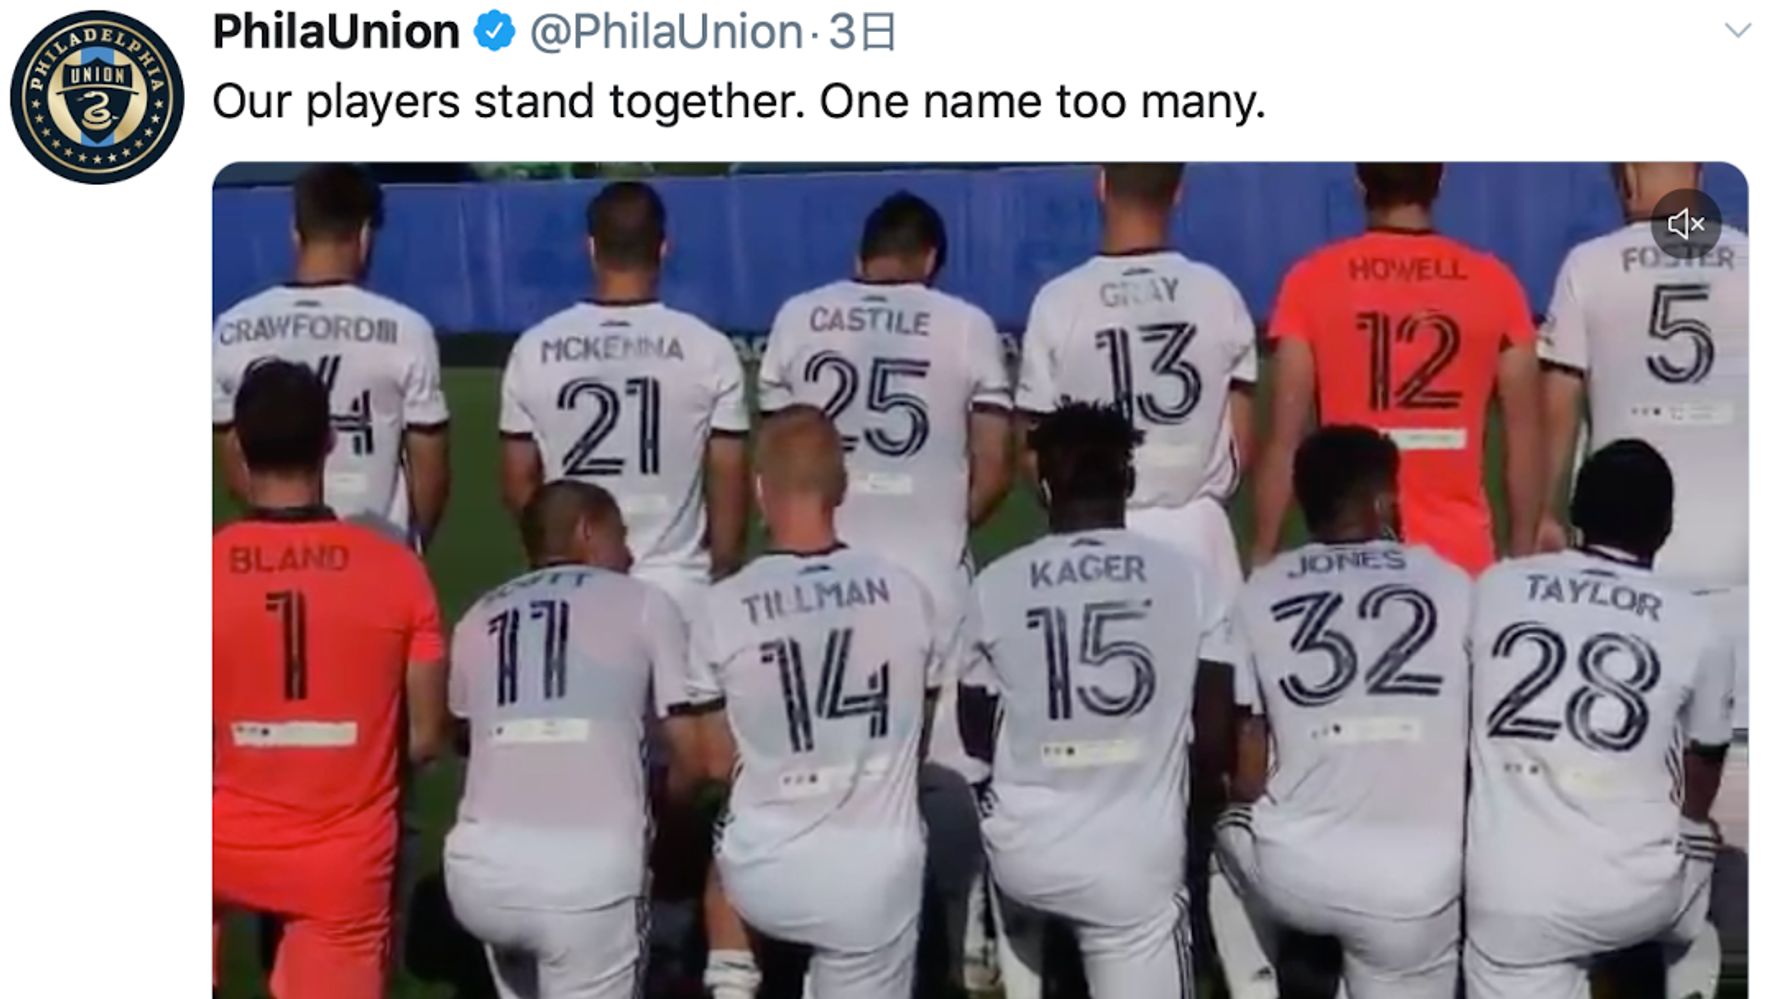 ユニフォームに刻んだ 犠牲者たちの名前の意味とは アメリカのサッカーチーム 名前が多すぎます ハフポスト